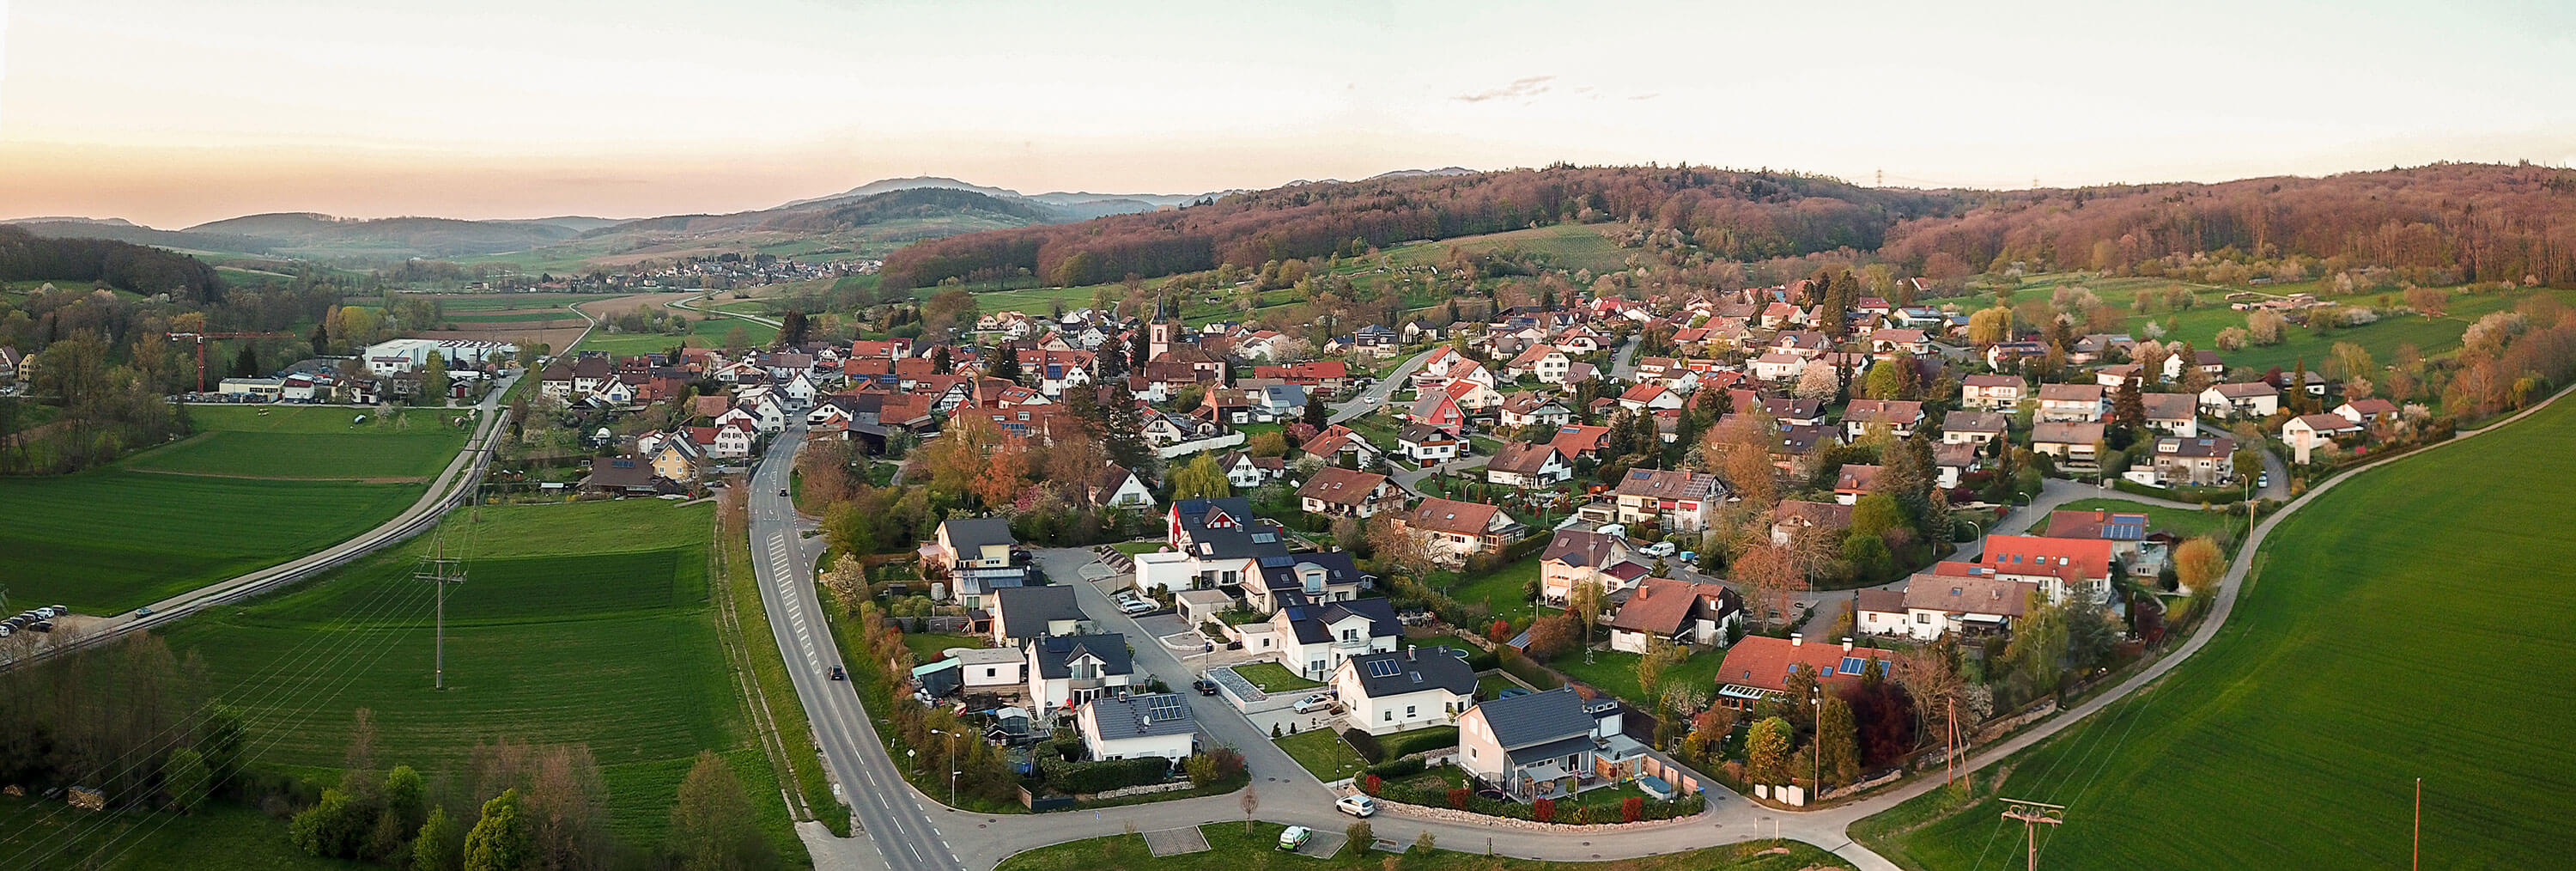 Luftbild der Gemeinde Wittlingen mit Landschaft